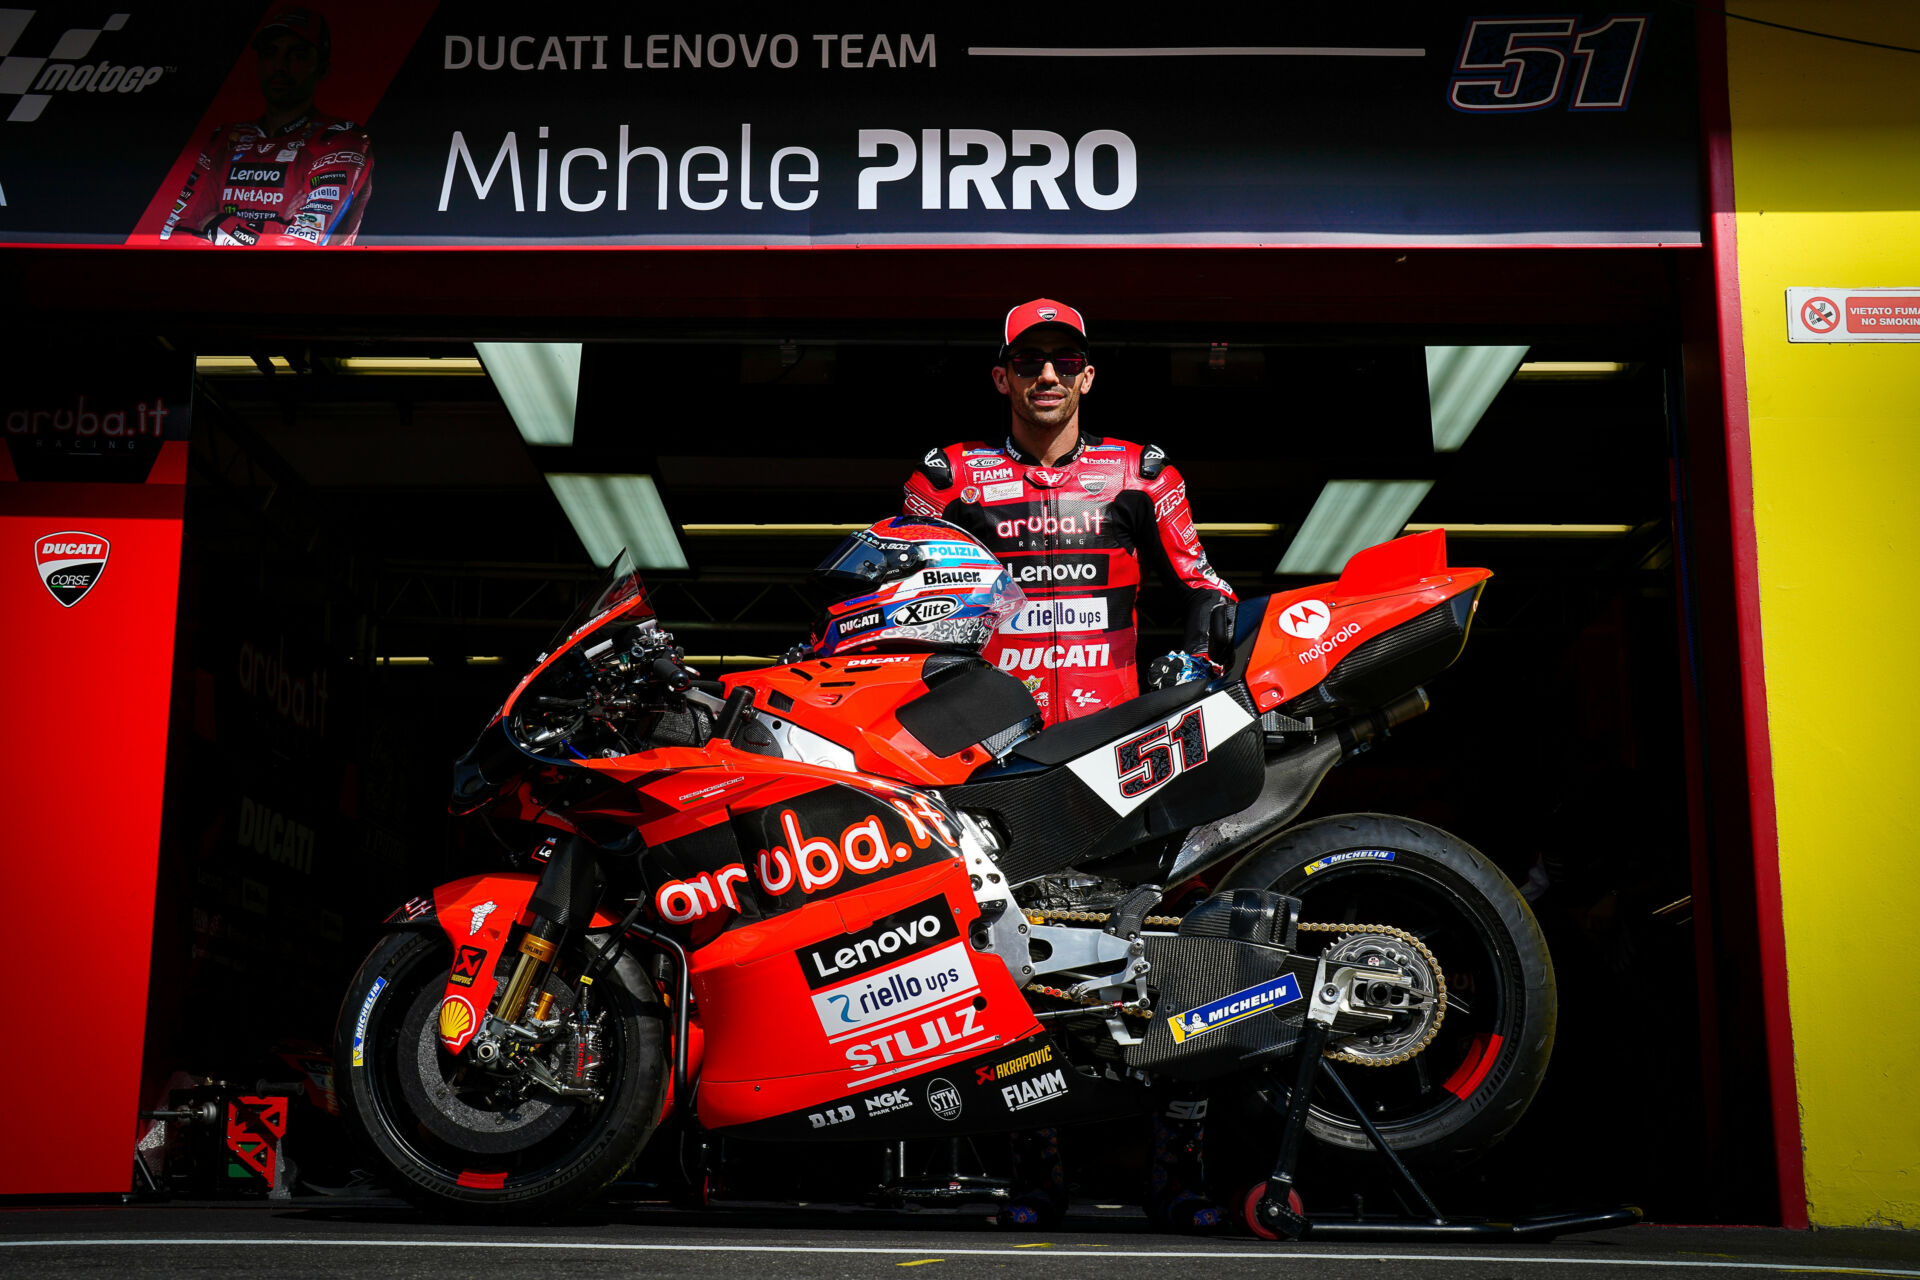 Michele Pirro at Mugello. Photo courtesy Ducati.